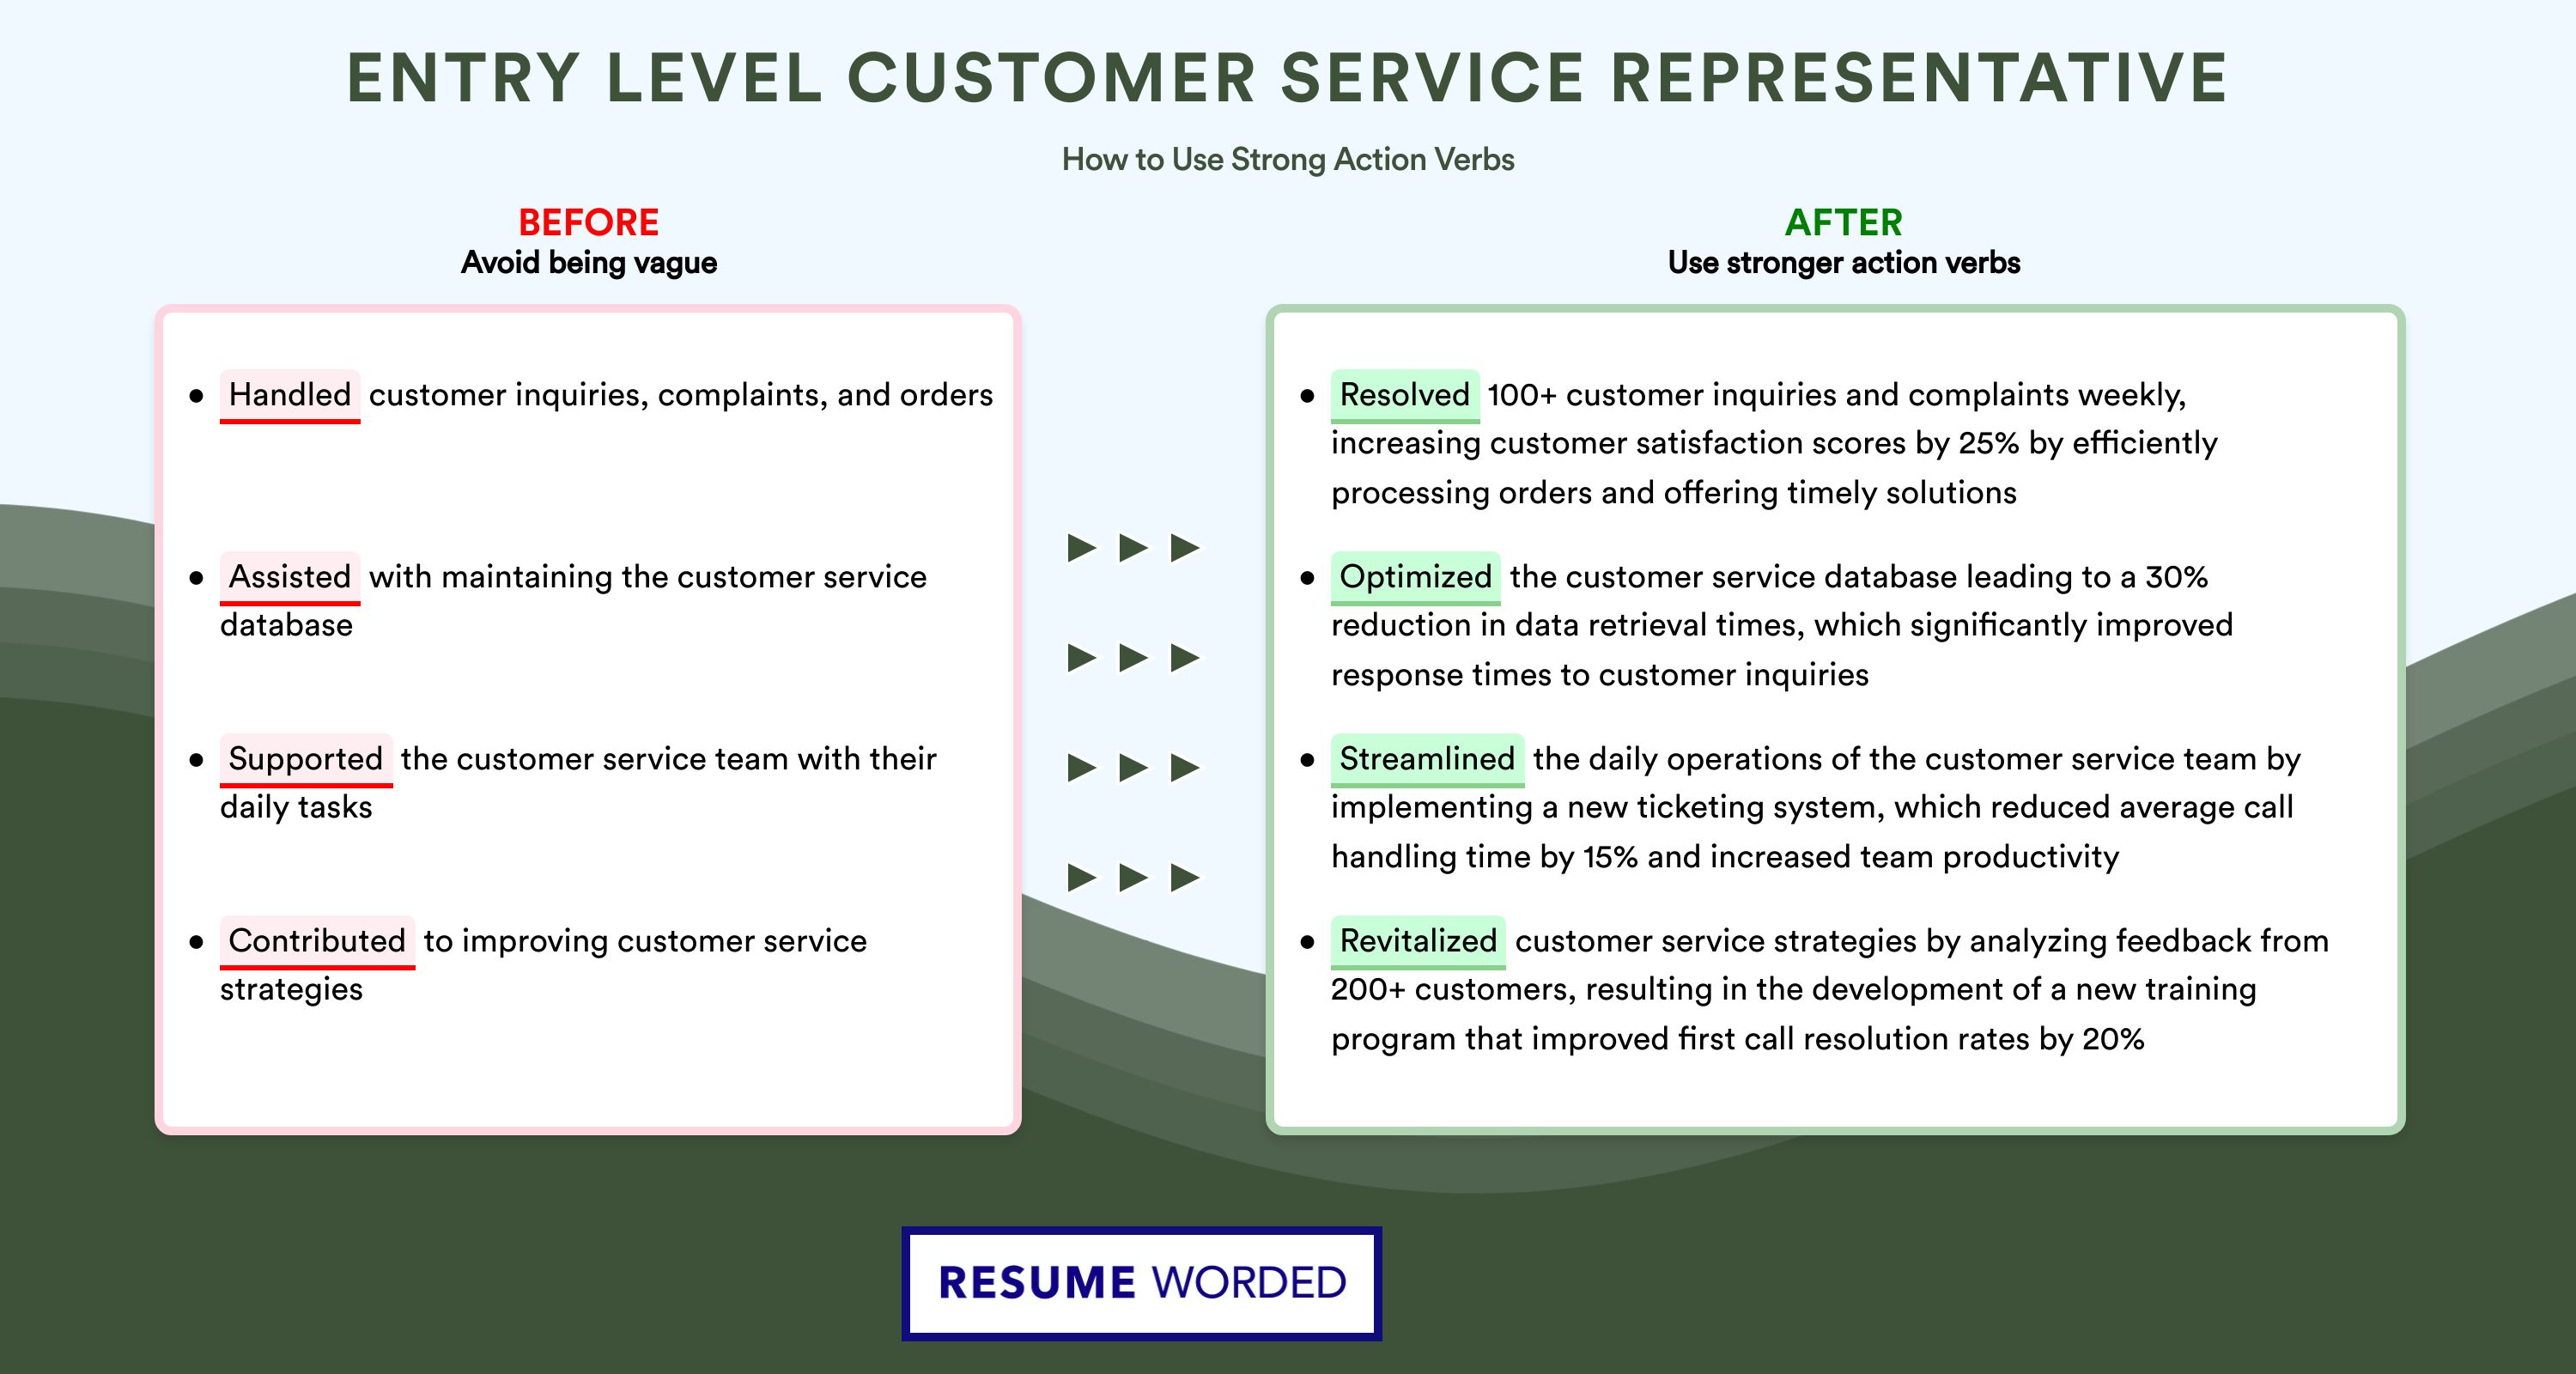 Action Verbs for Entry Level Customer Service Representative